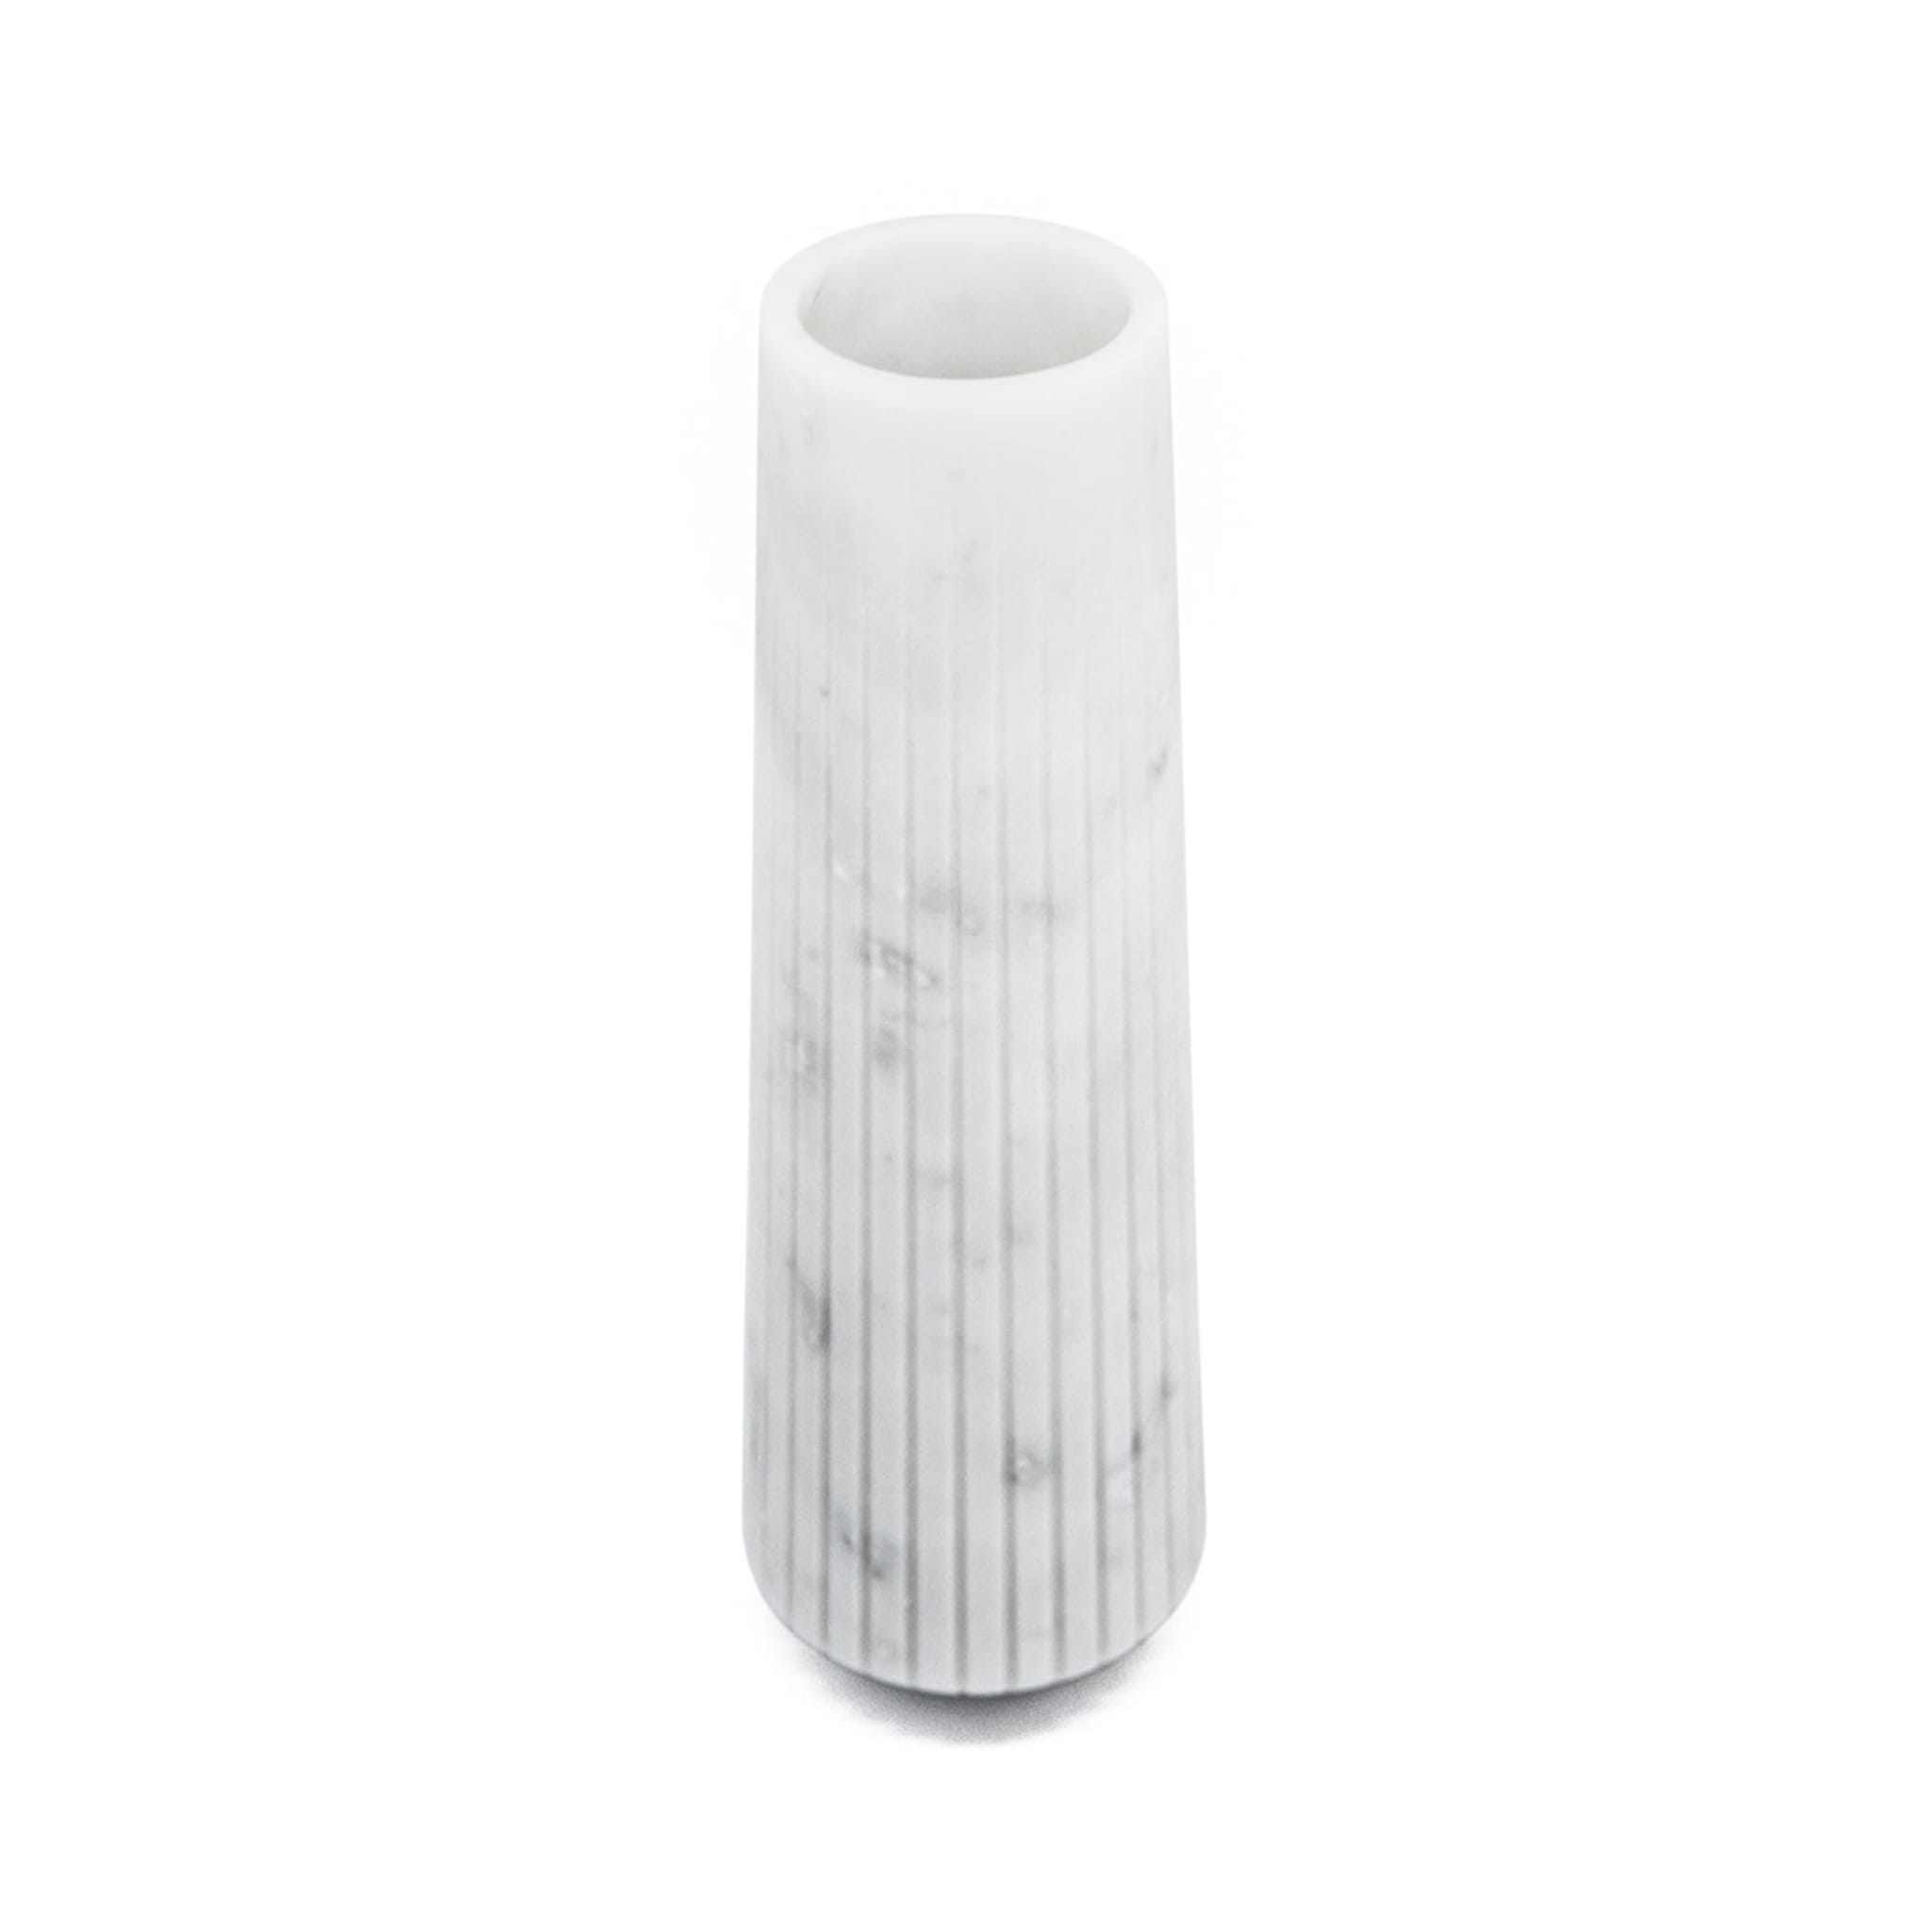 White Carrara Marble Tall Vase by Jacopo Simonetti - Alternative view 2